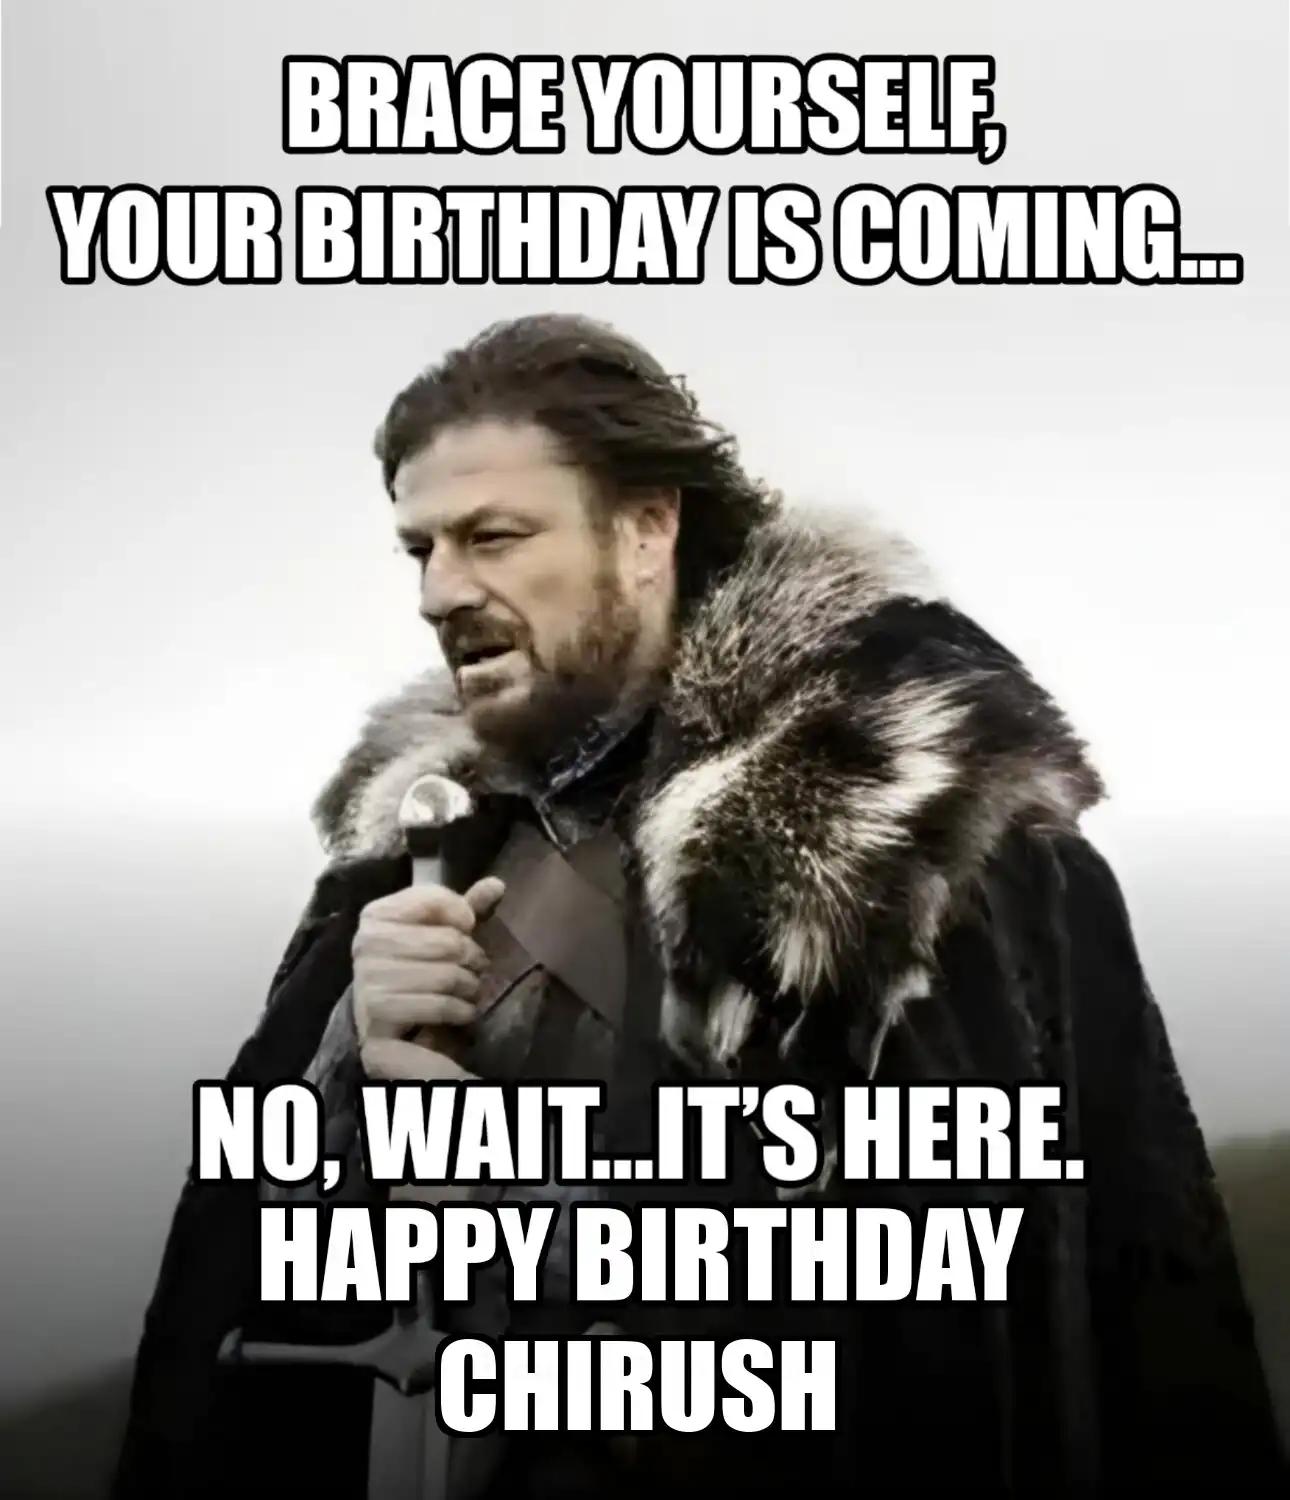 Happy Birthday Chirush Brace Yourself Your Birthday Is Coming Meme